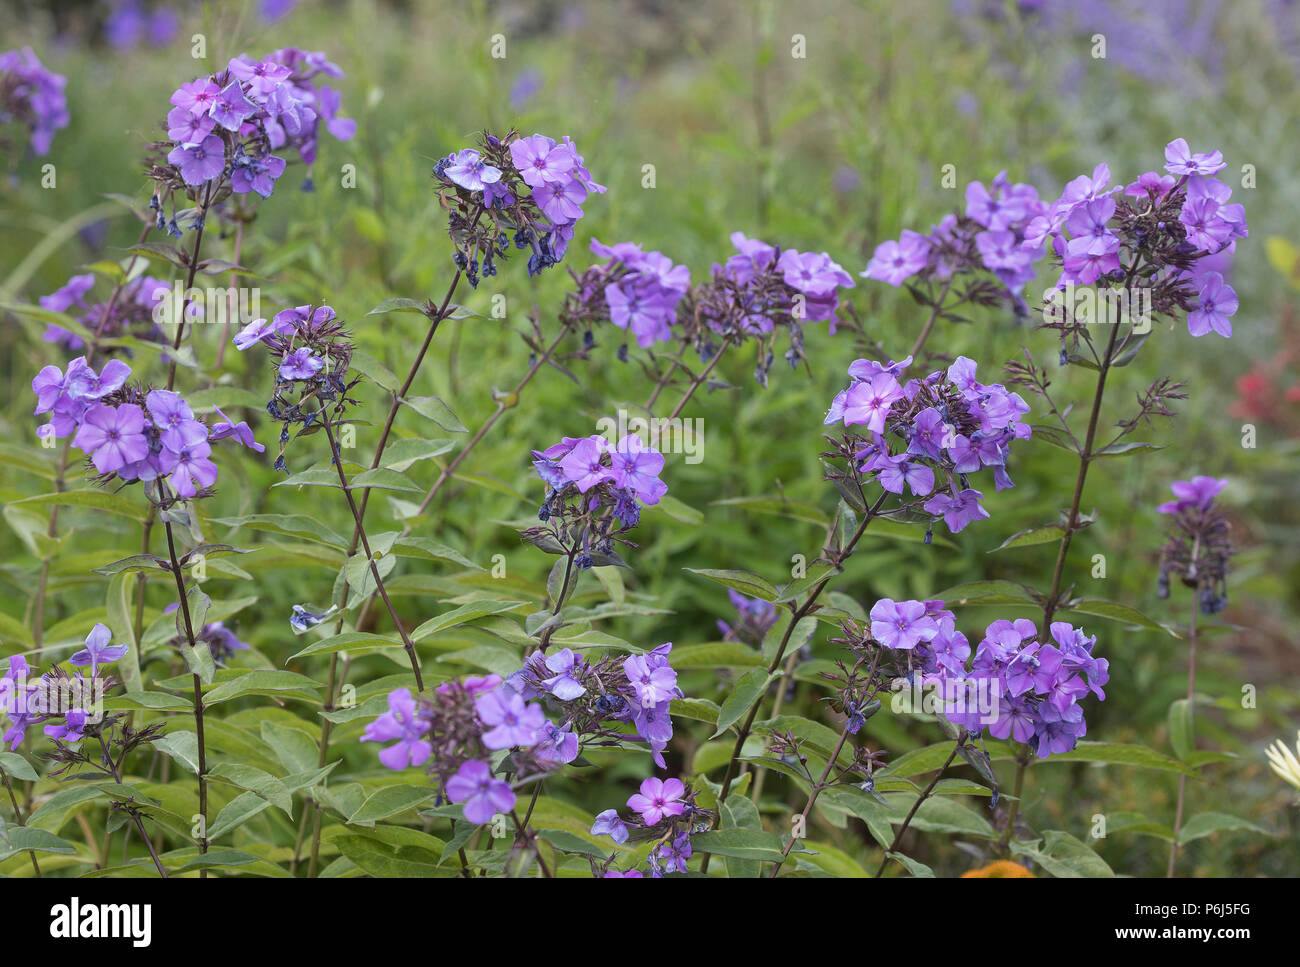 Phlox Paniculata ' Franz Schubert' Stock Photo